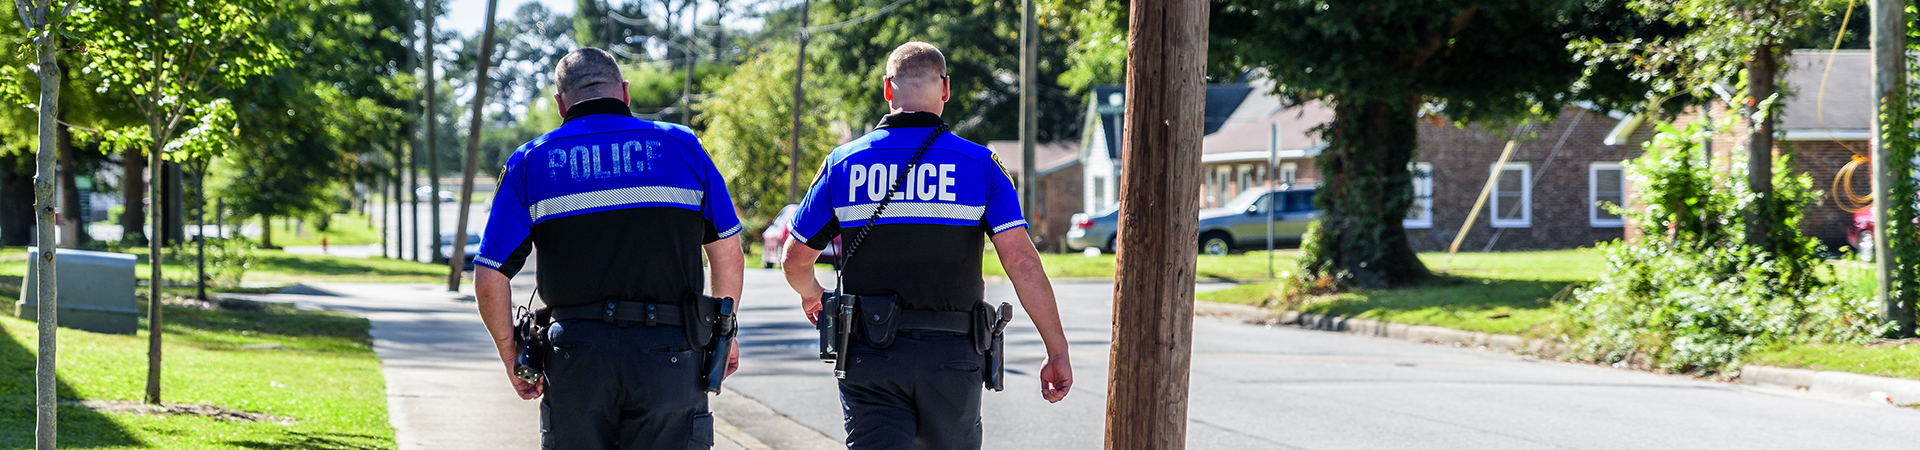 Police walking the neighborhood